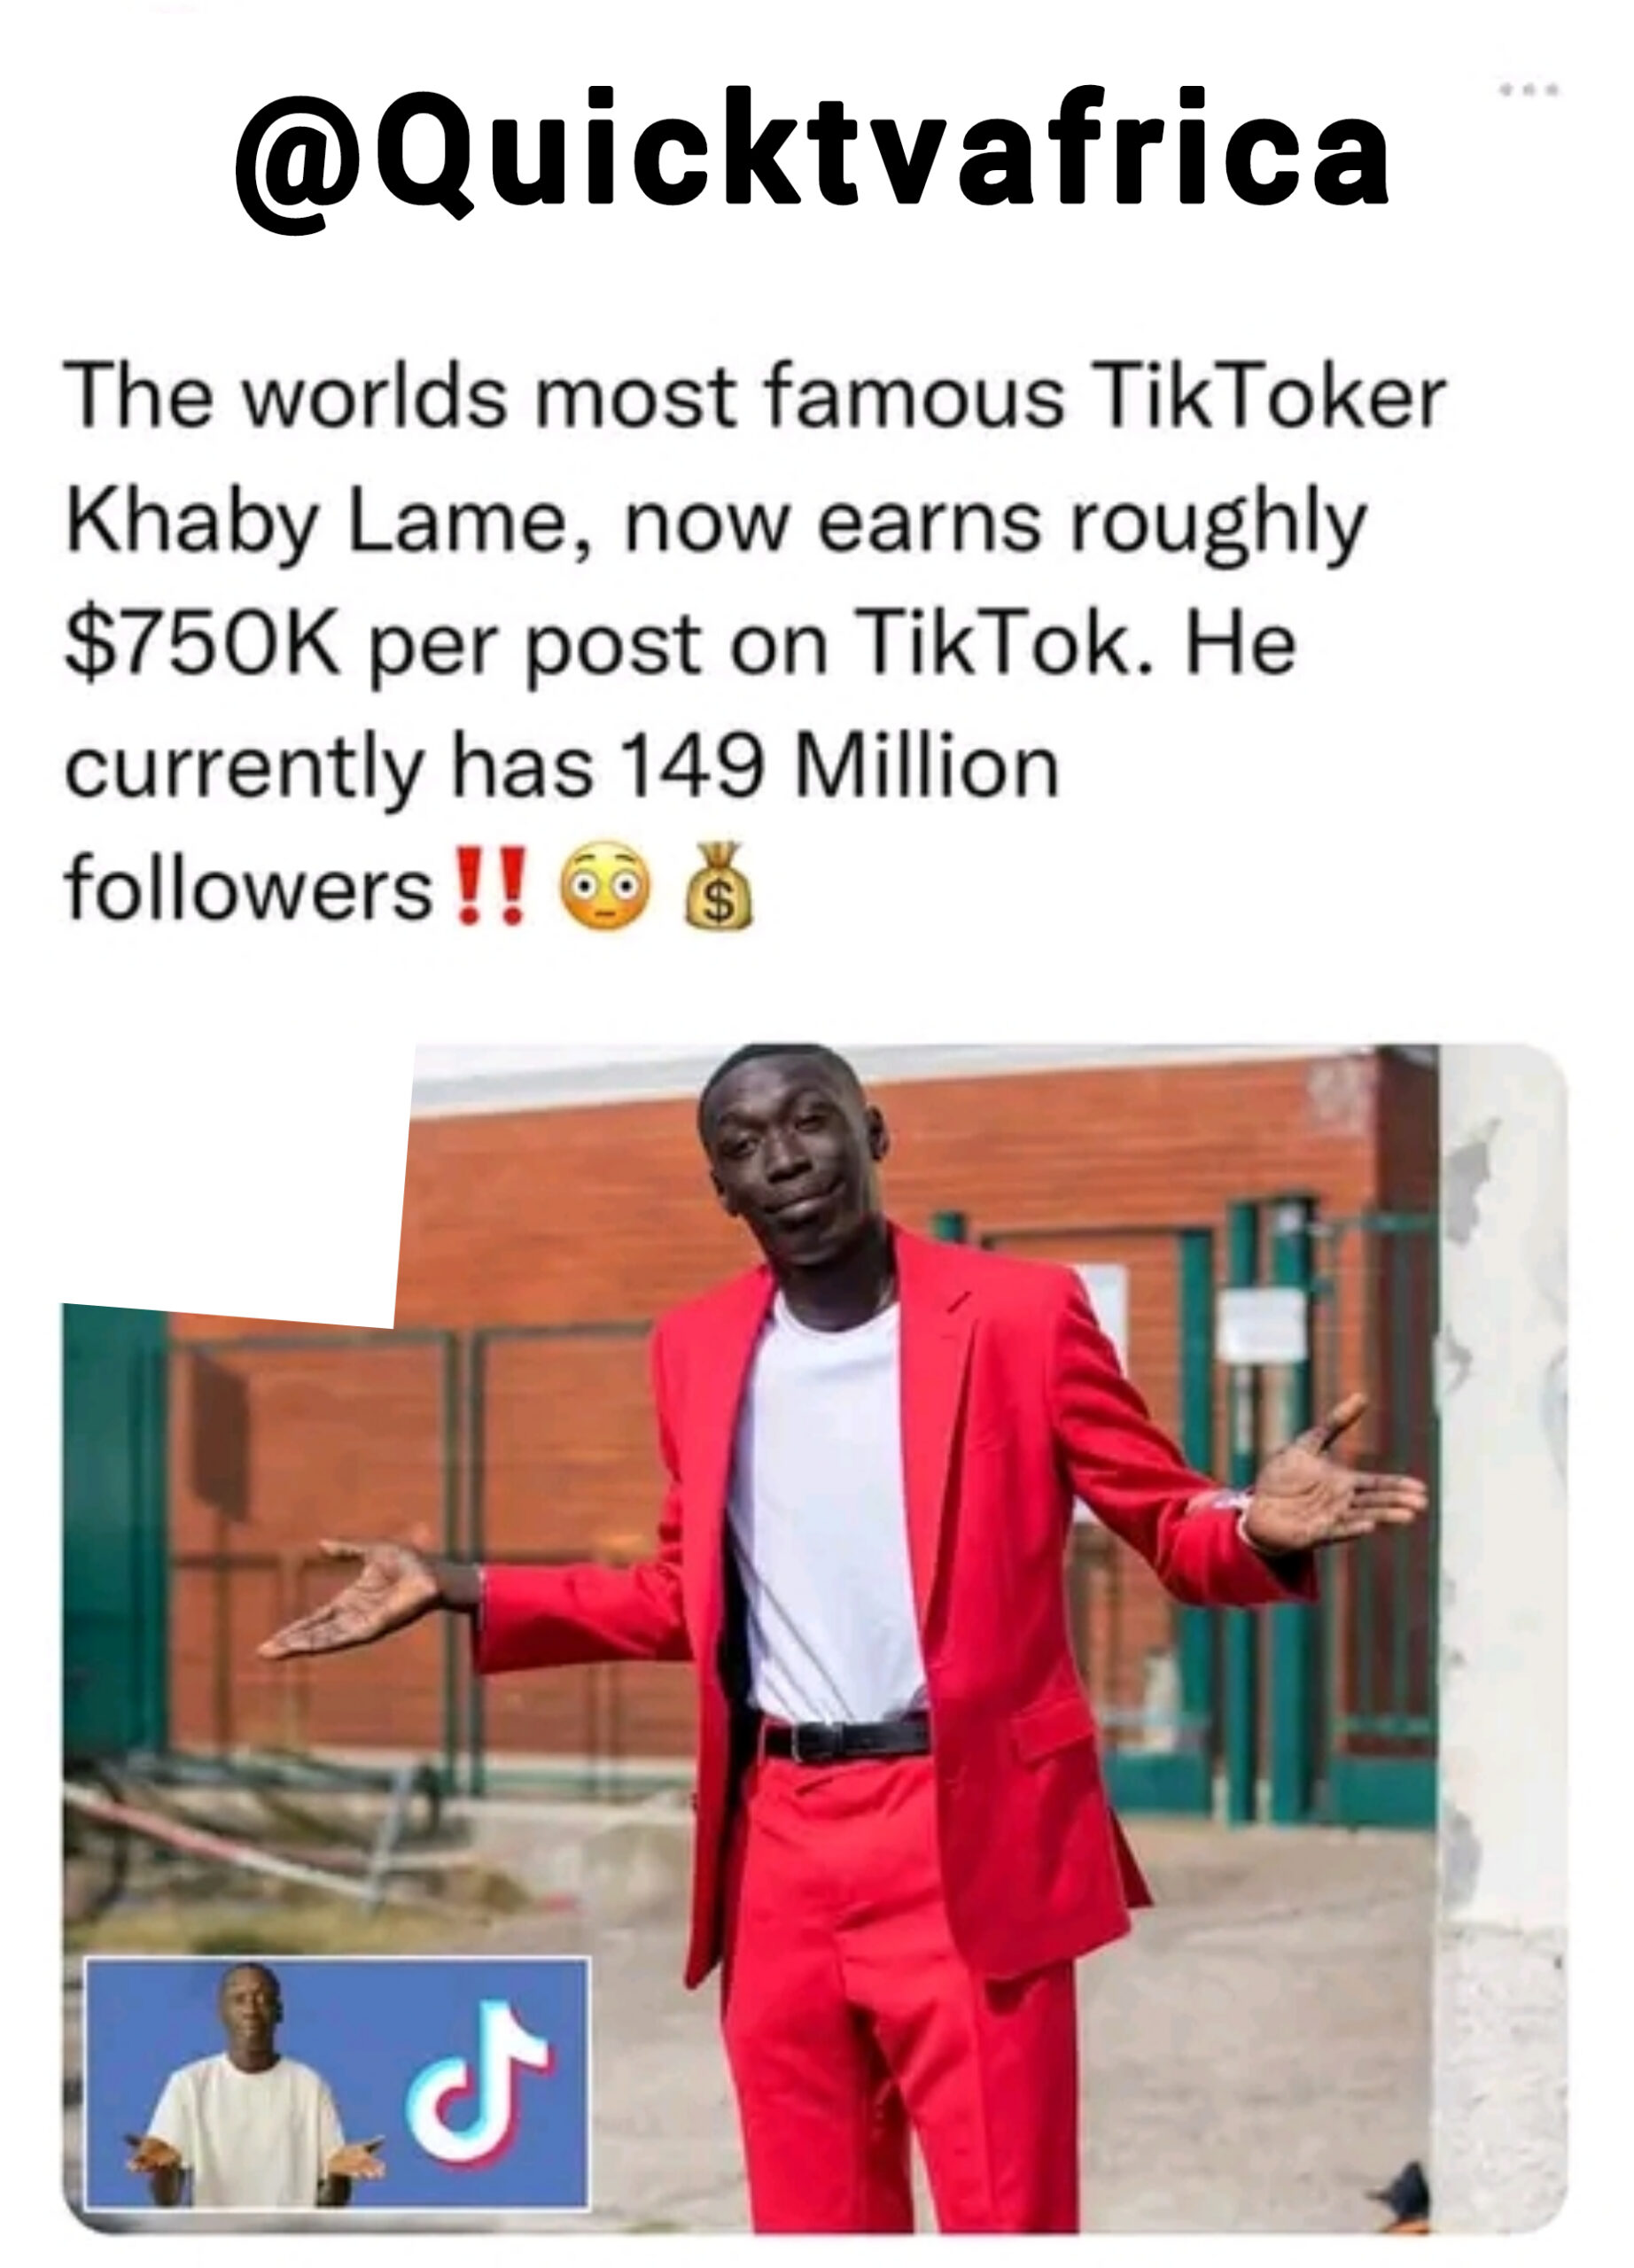 Famous Tiktoker Khaby  shocking has been revealed that he will earn $750k per post on Tiktok